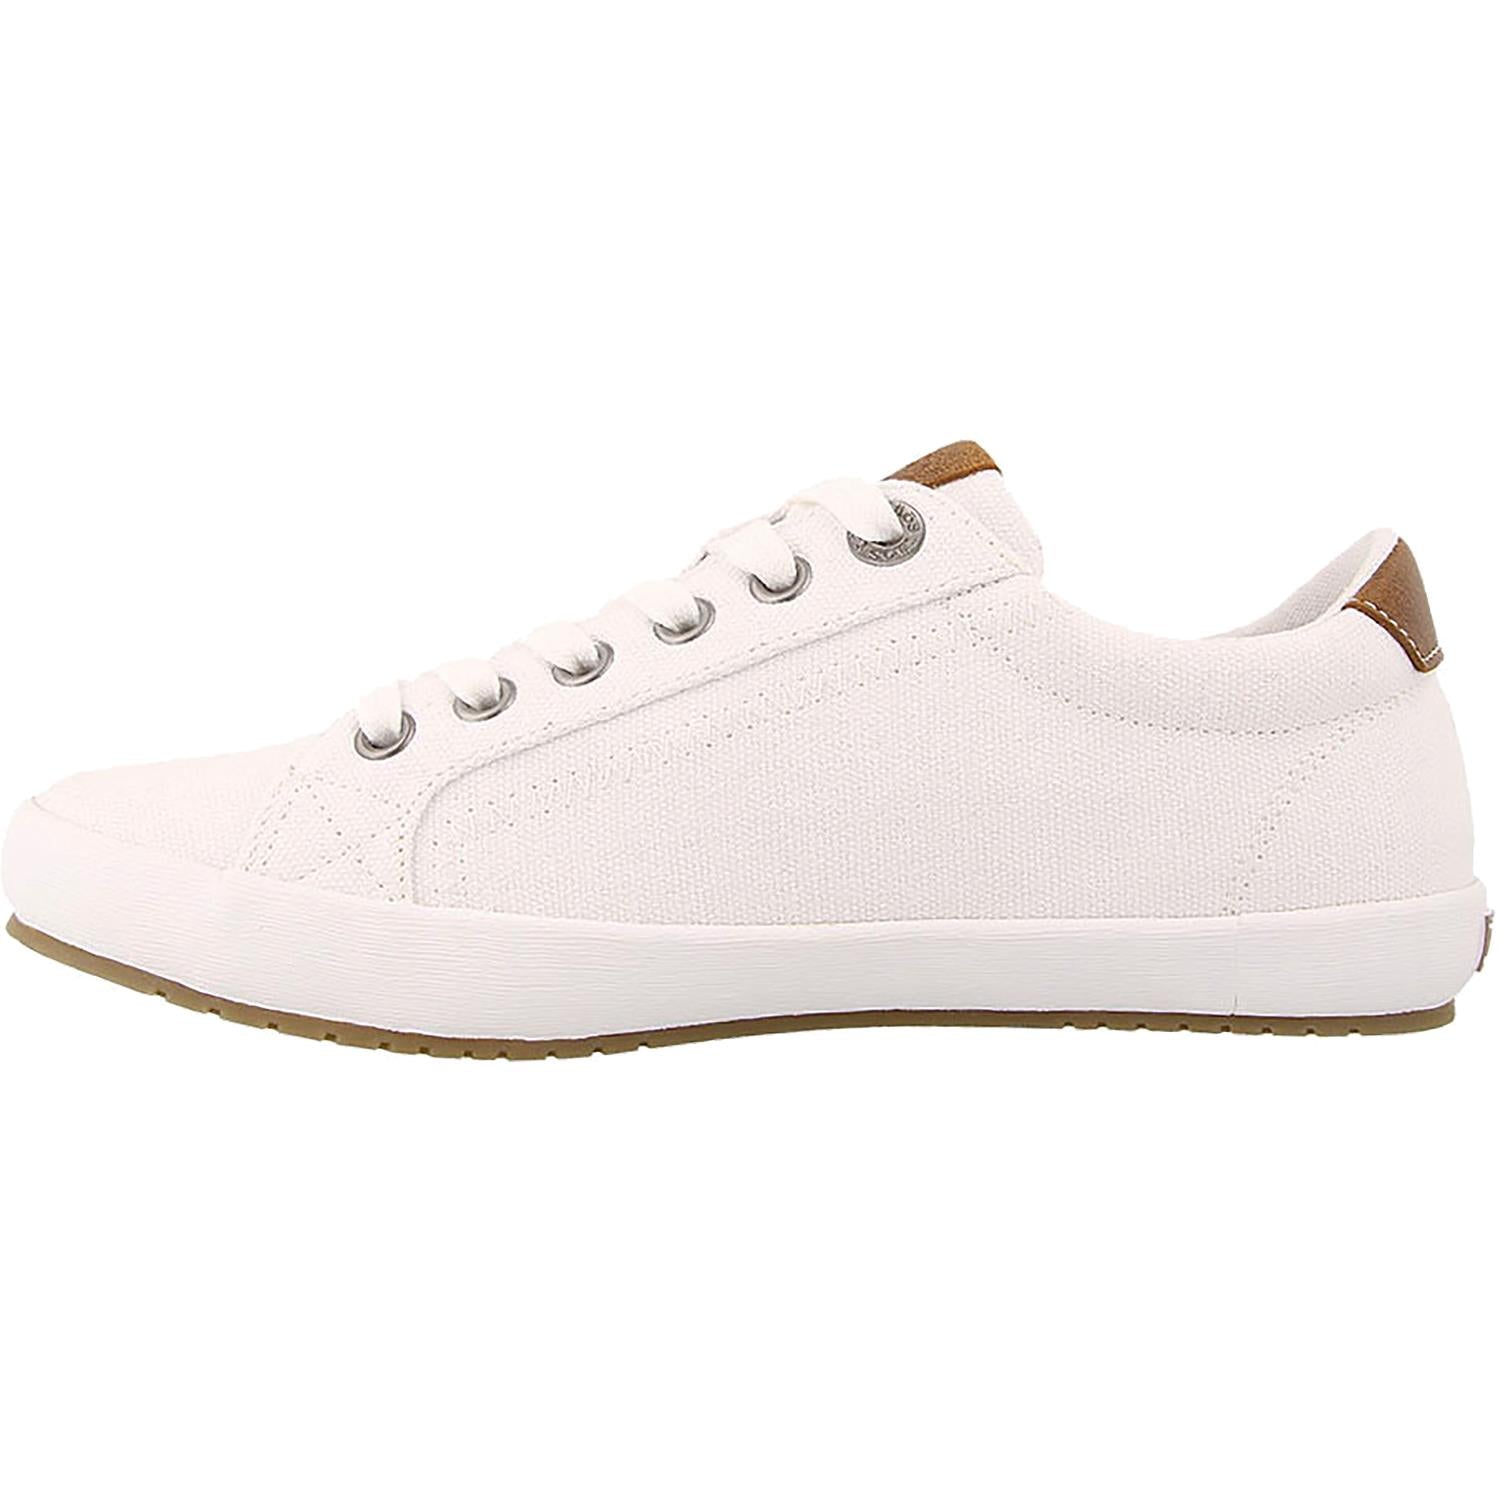 Taos Star Burst | Women's White Canvas Shoes | Footwear Etc. – Footwear ...